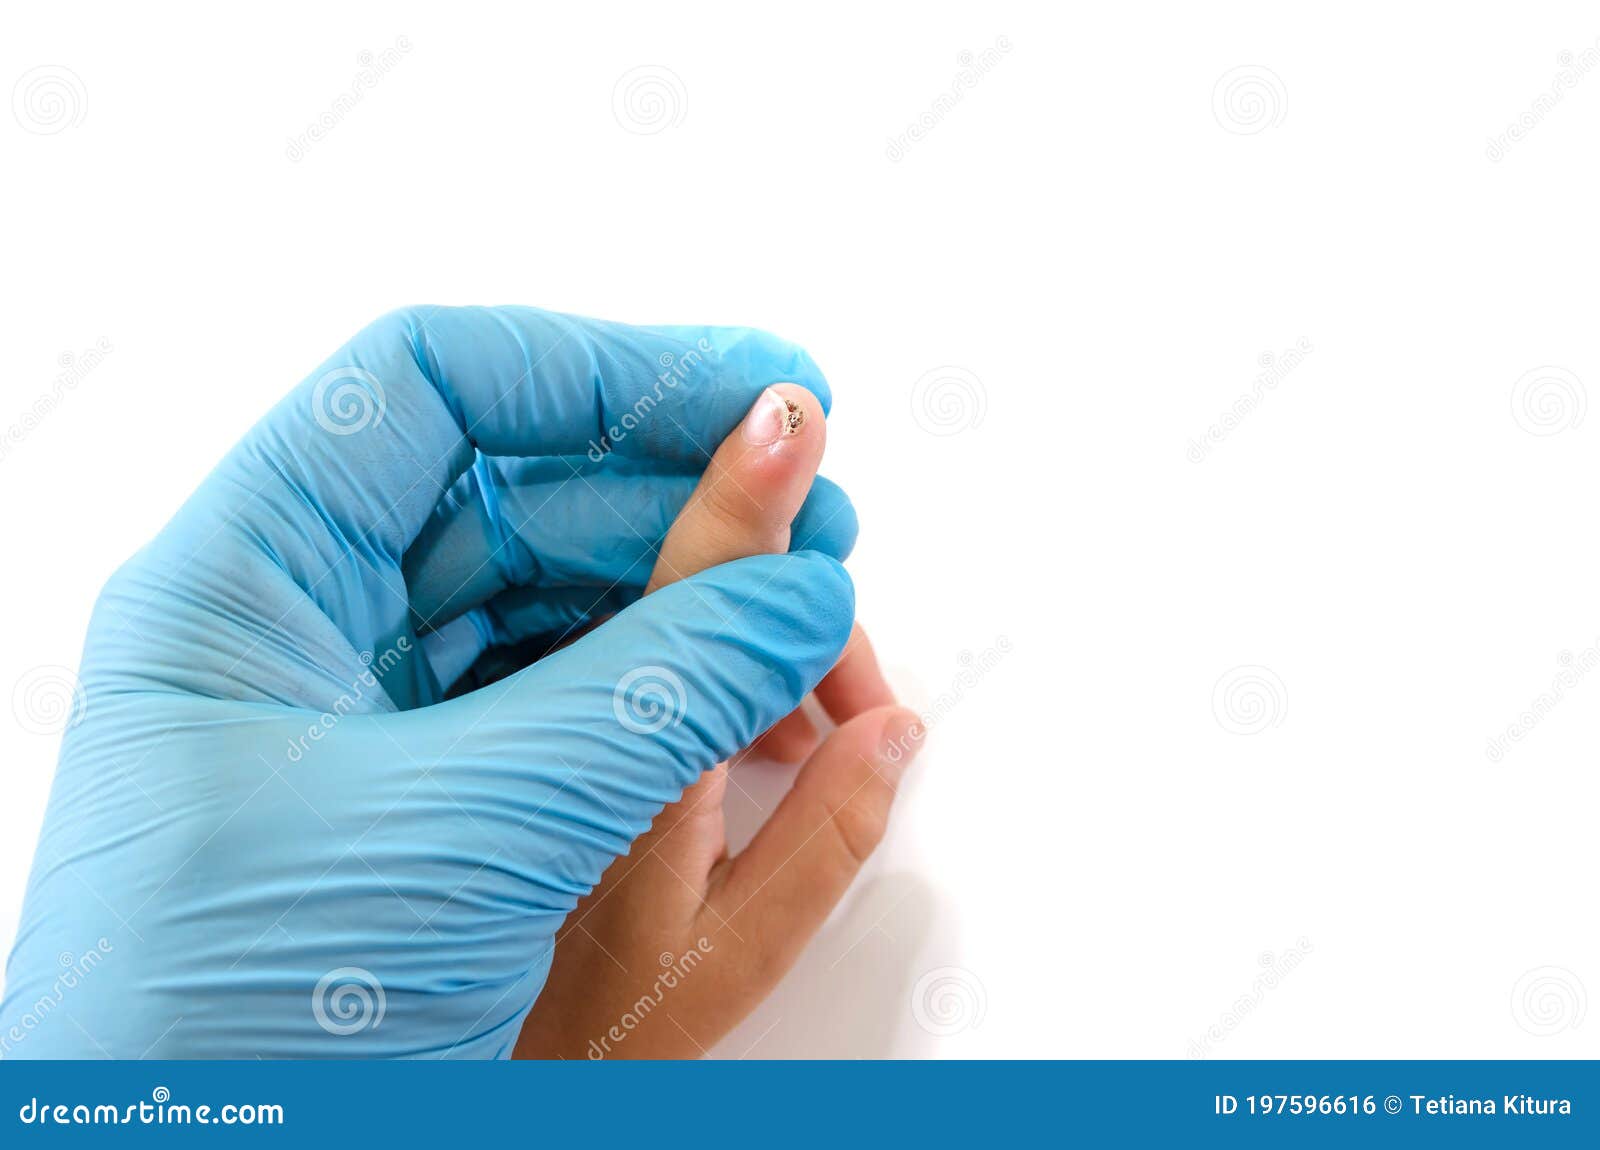 Human papillomavirus warts on hands treatment, Hpv virus treatment